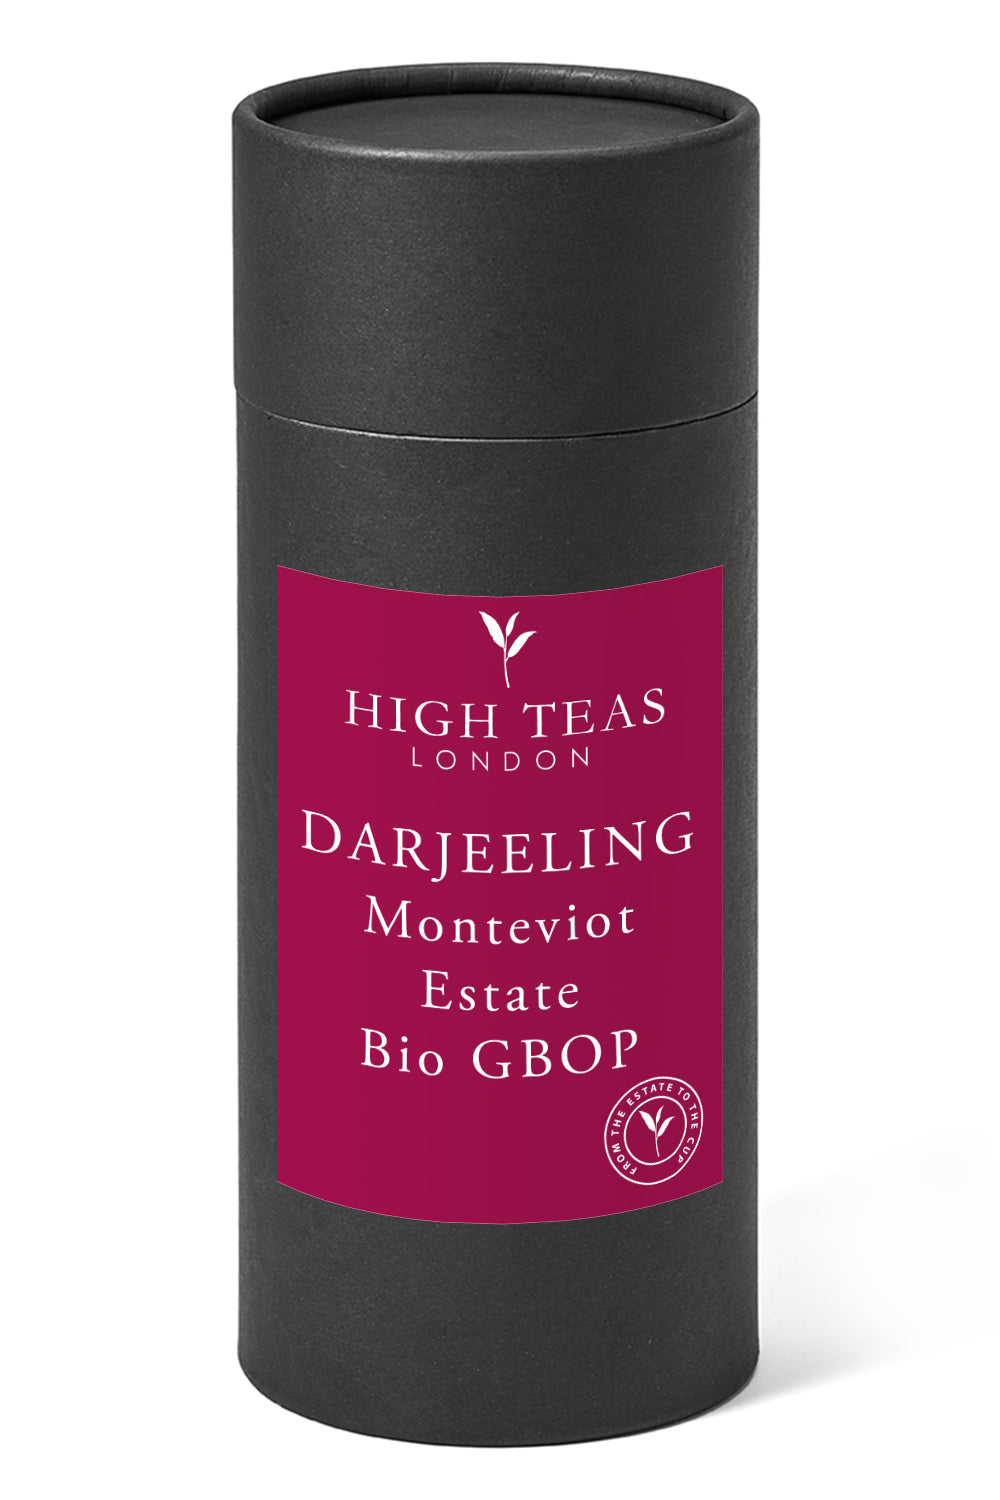 Darjeeling 2nd Flush Monteviot Estate Bio GBOP "Unscented Afternoon Selection"-150g gift-Loose Leaf Tea-High Teas